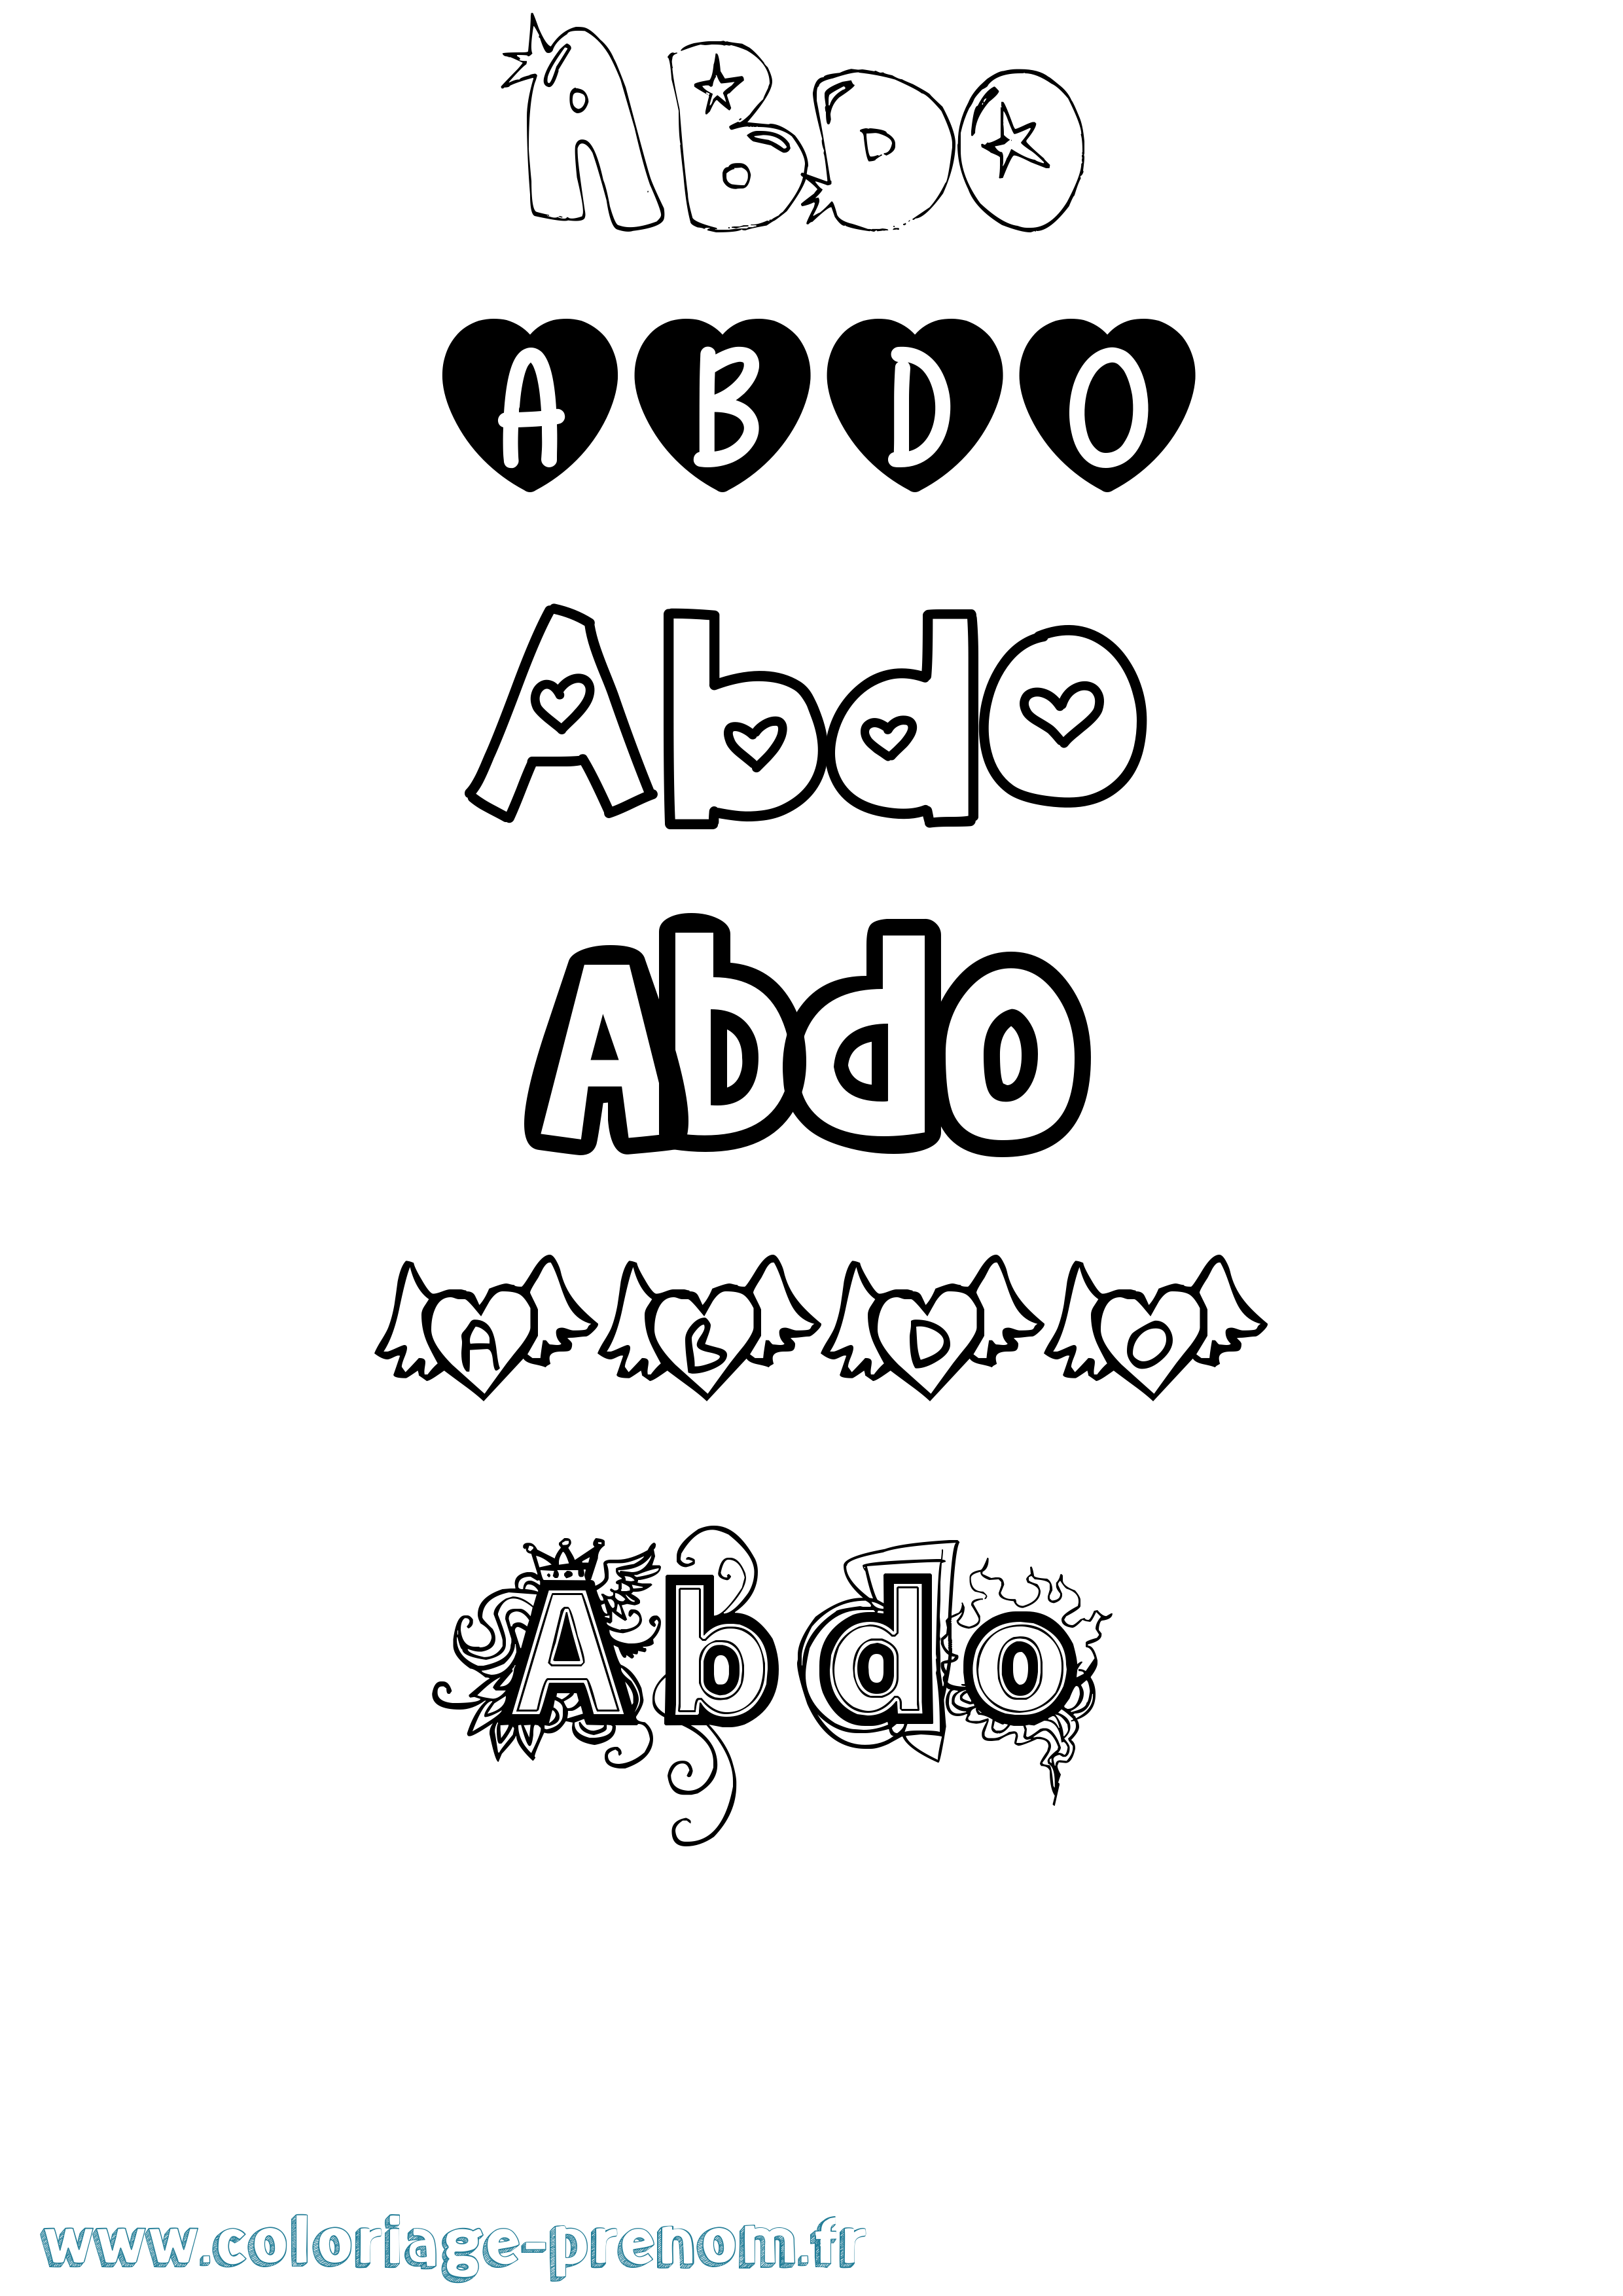 Coloriage prénom Abdo Girly